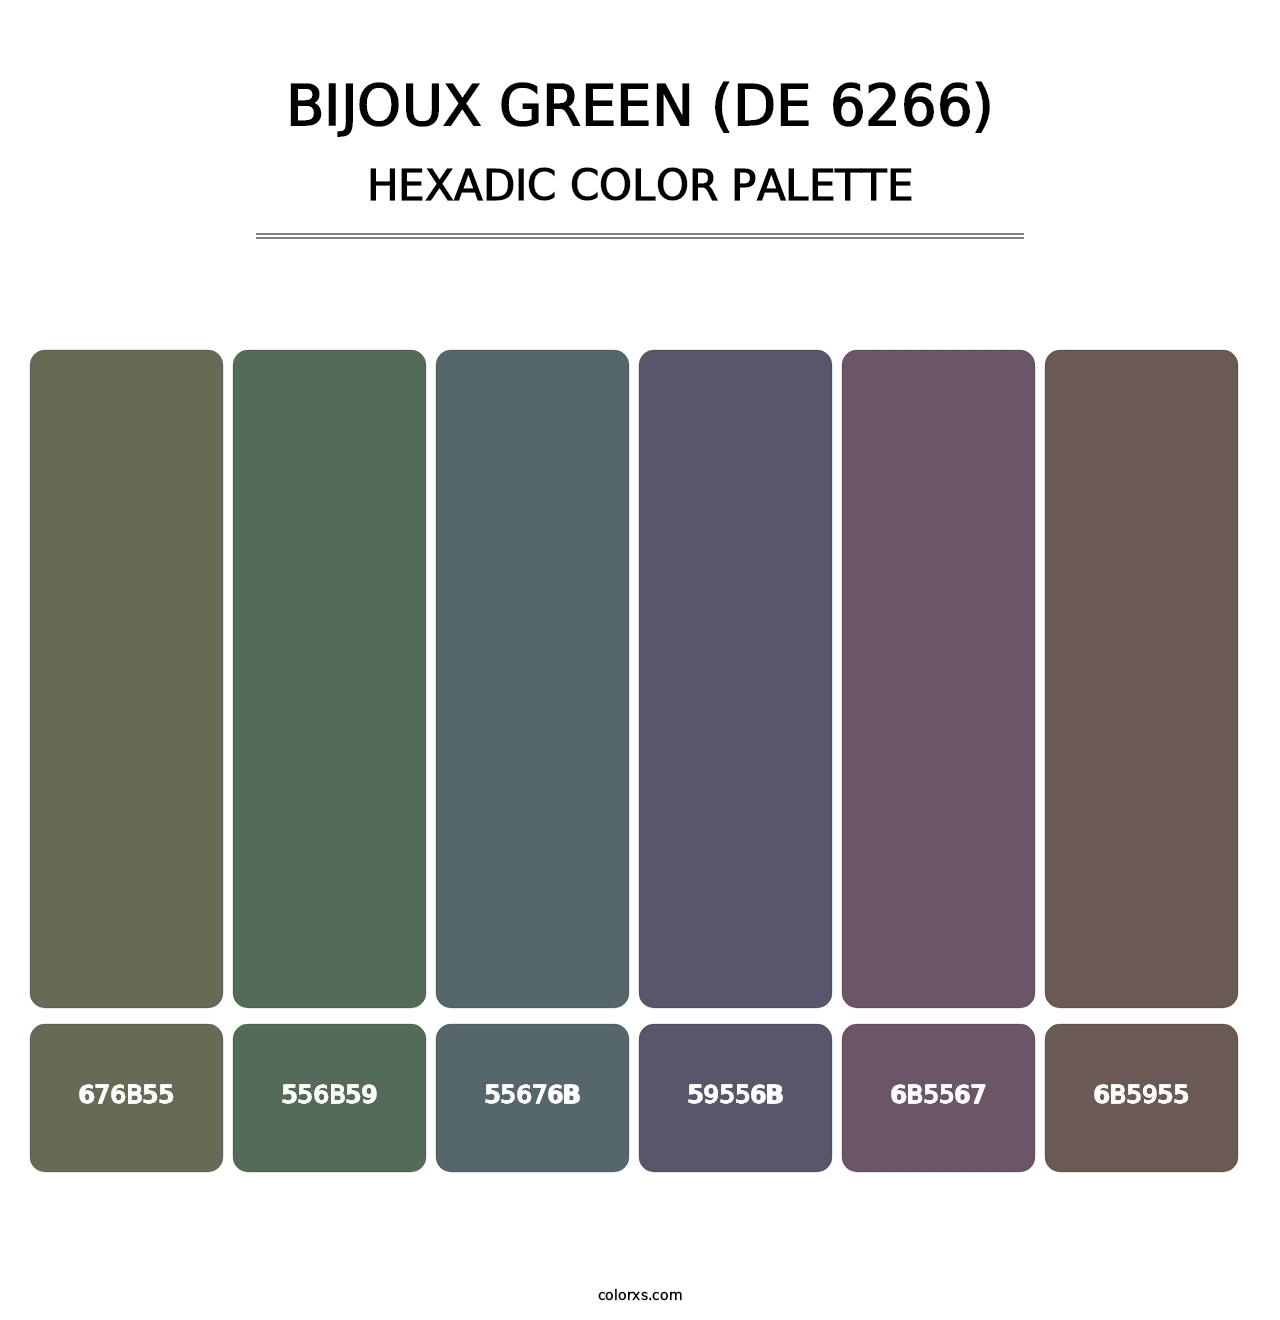 Bijoux Green (DE 6266) - Hexadic Color Palette